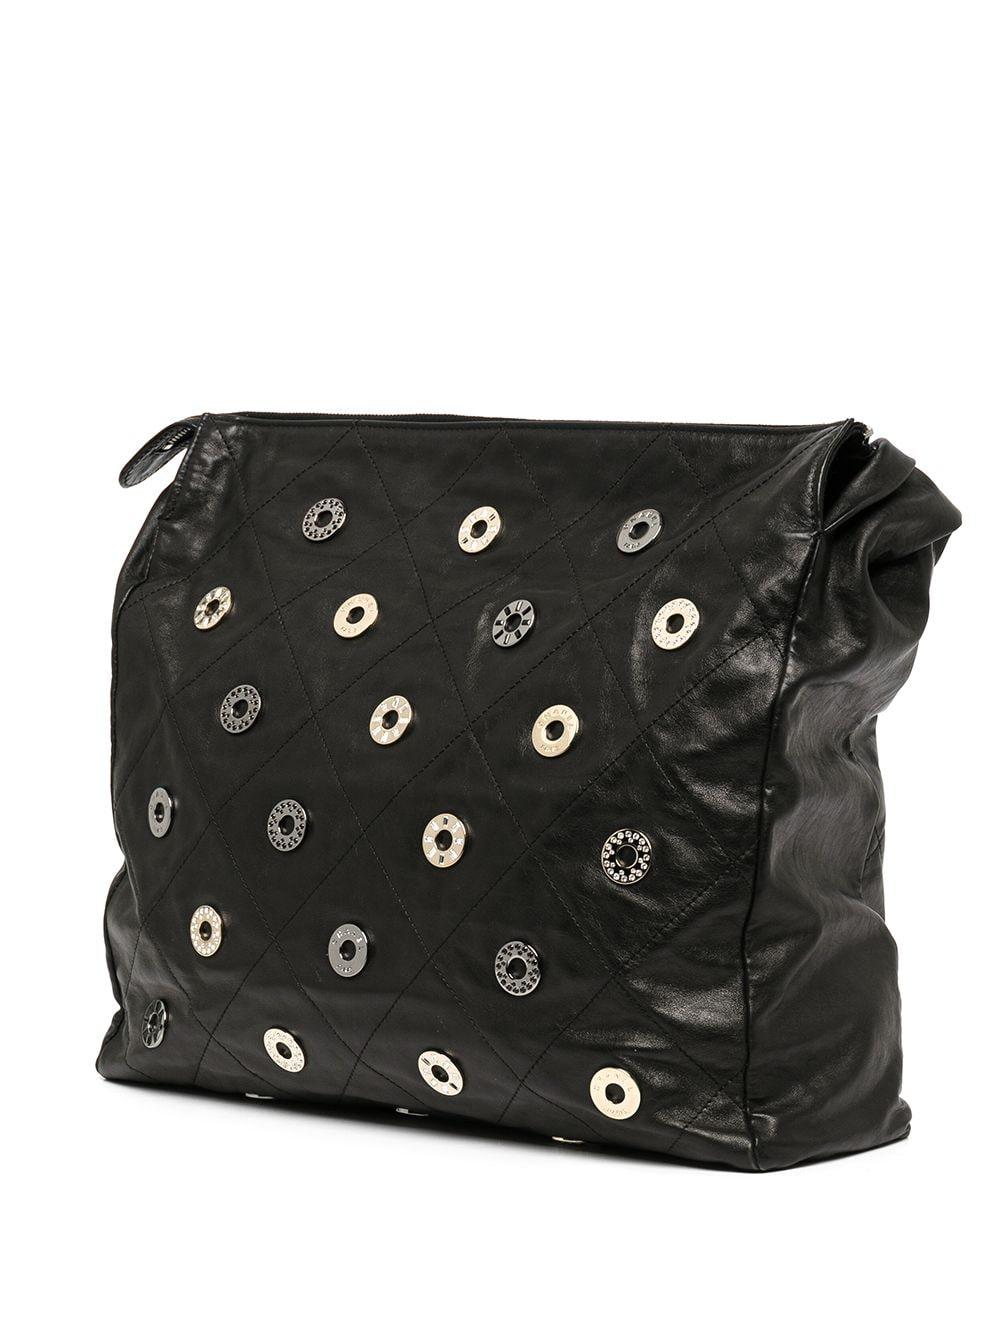 Chanel Rare Vintage 22 Black Quilted Swarovski Charm Shoulder Hobo Tote Bag For Sale 1